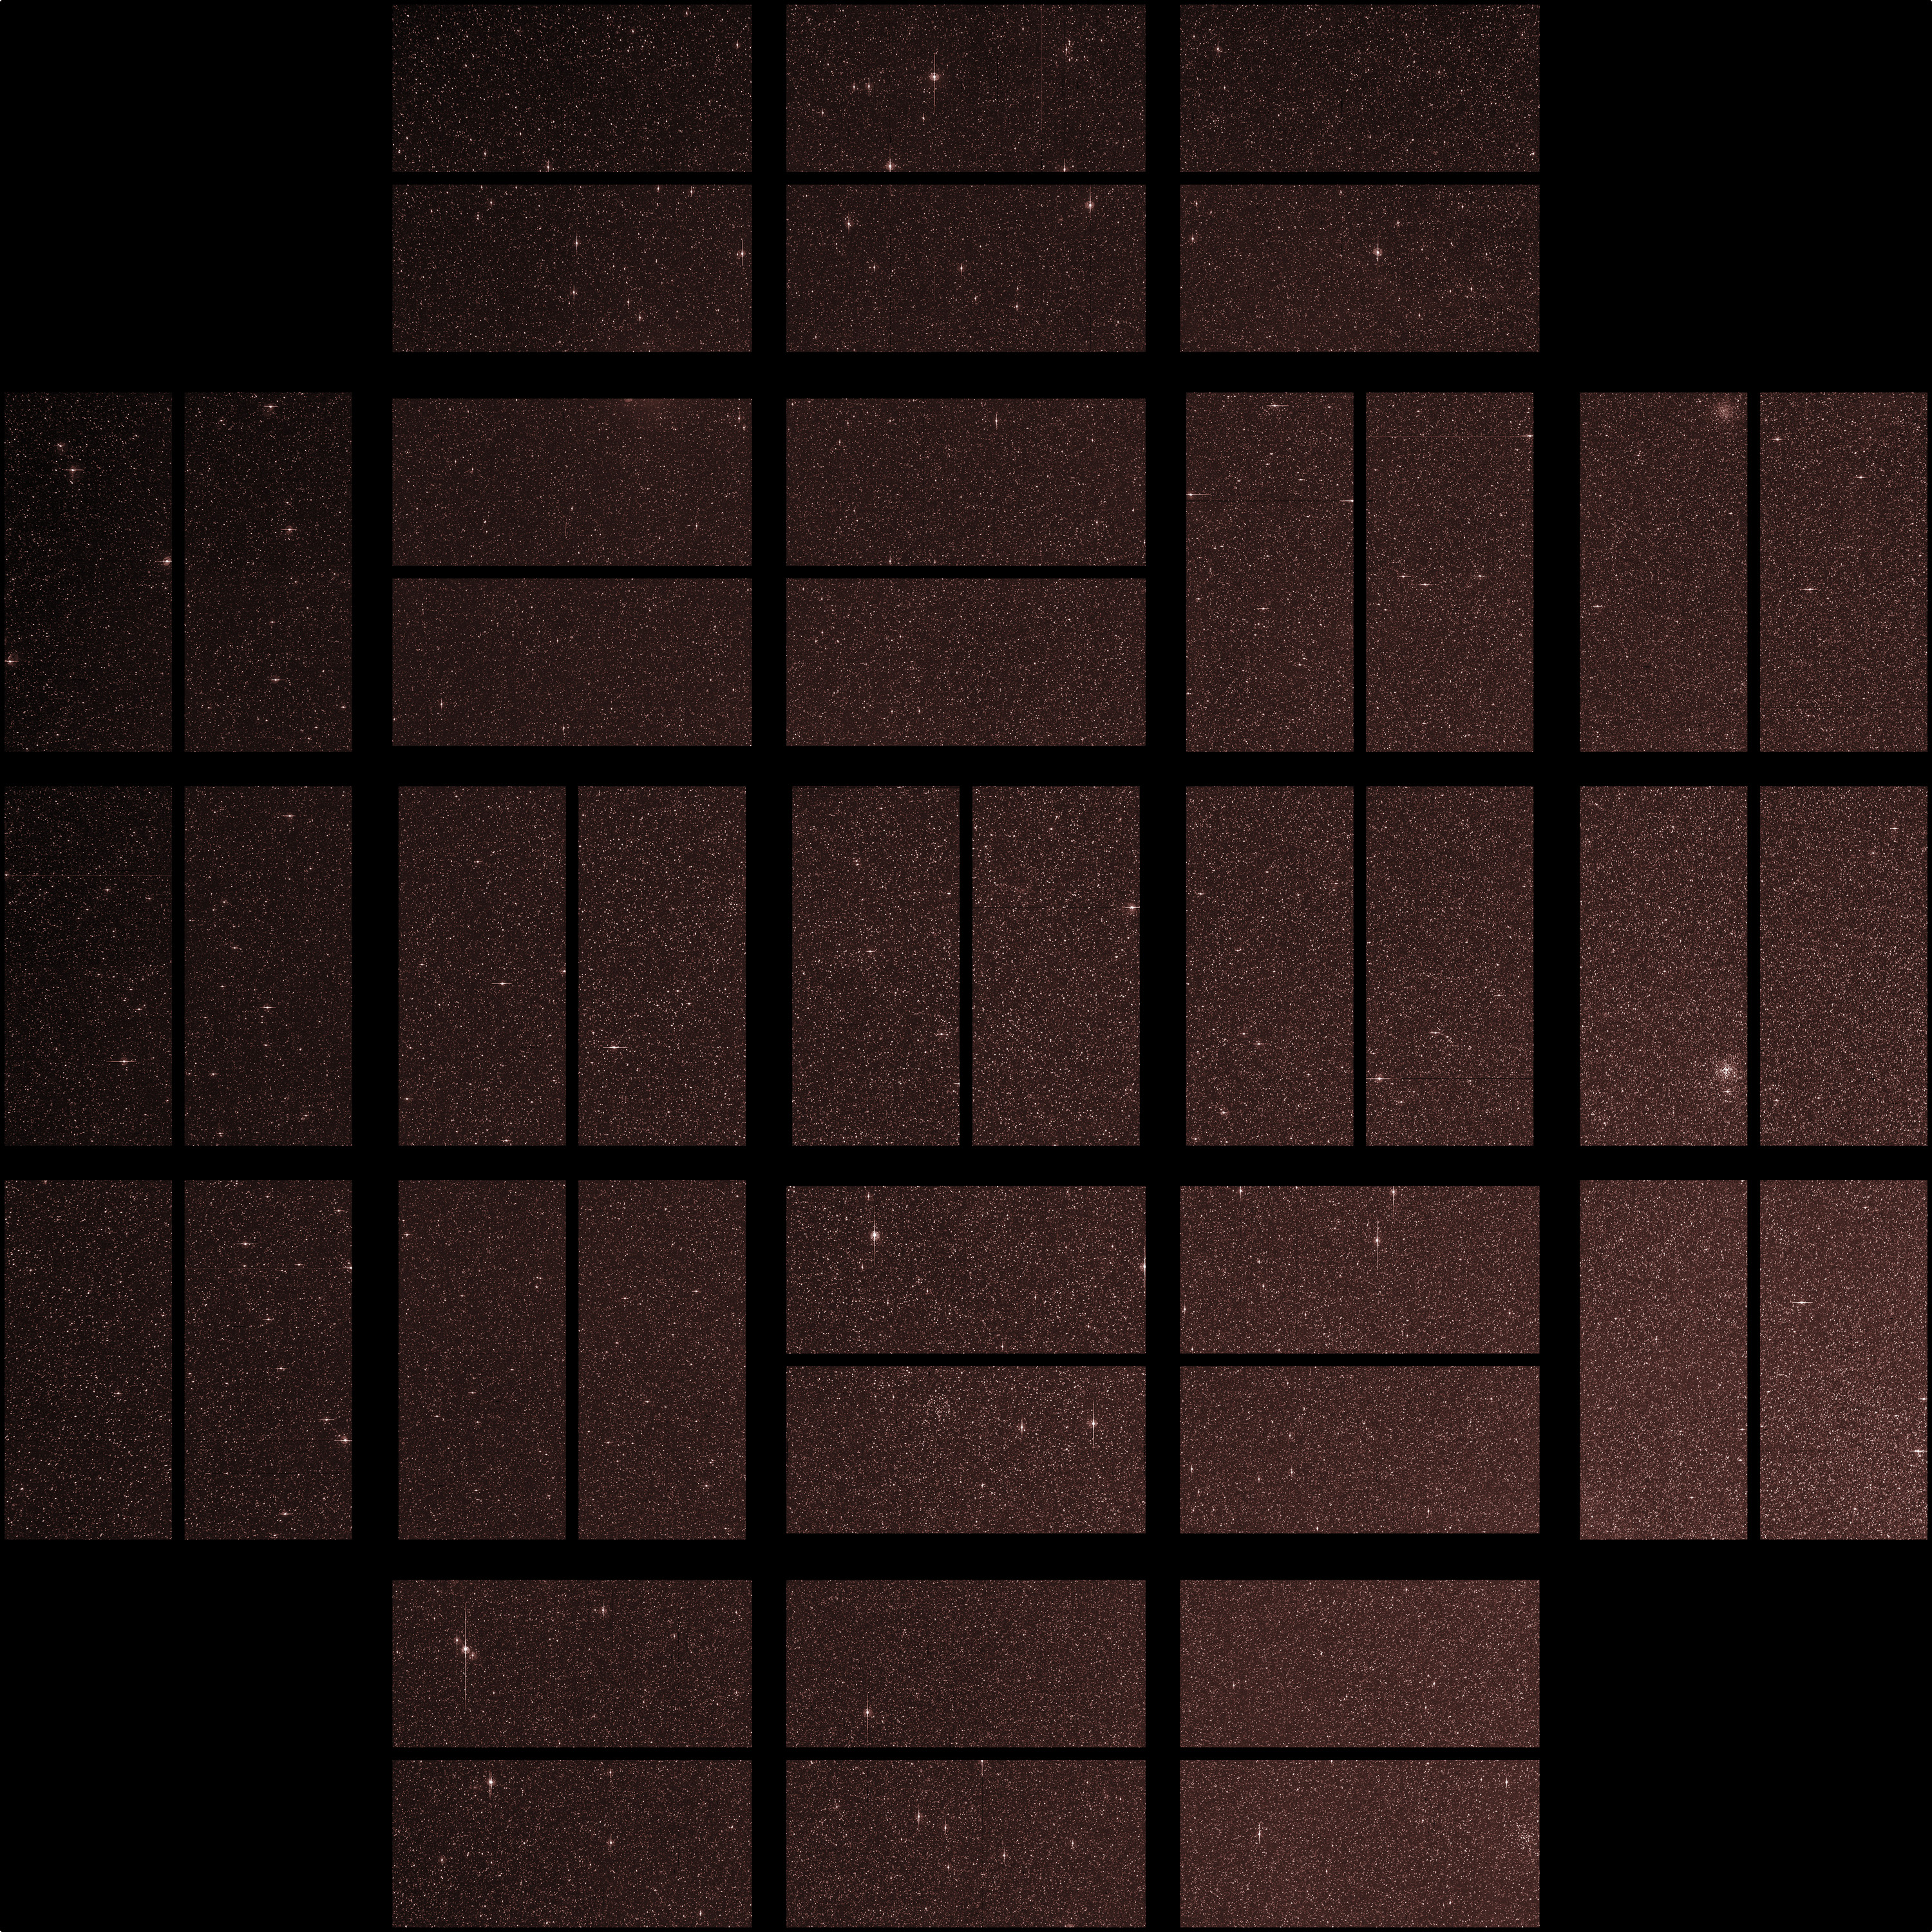 Full Focal Plane Image (First Light for Kepler Photometer)